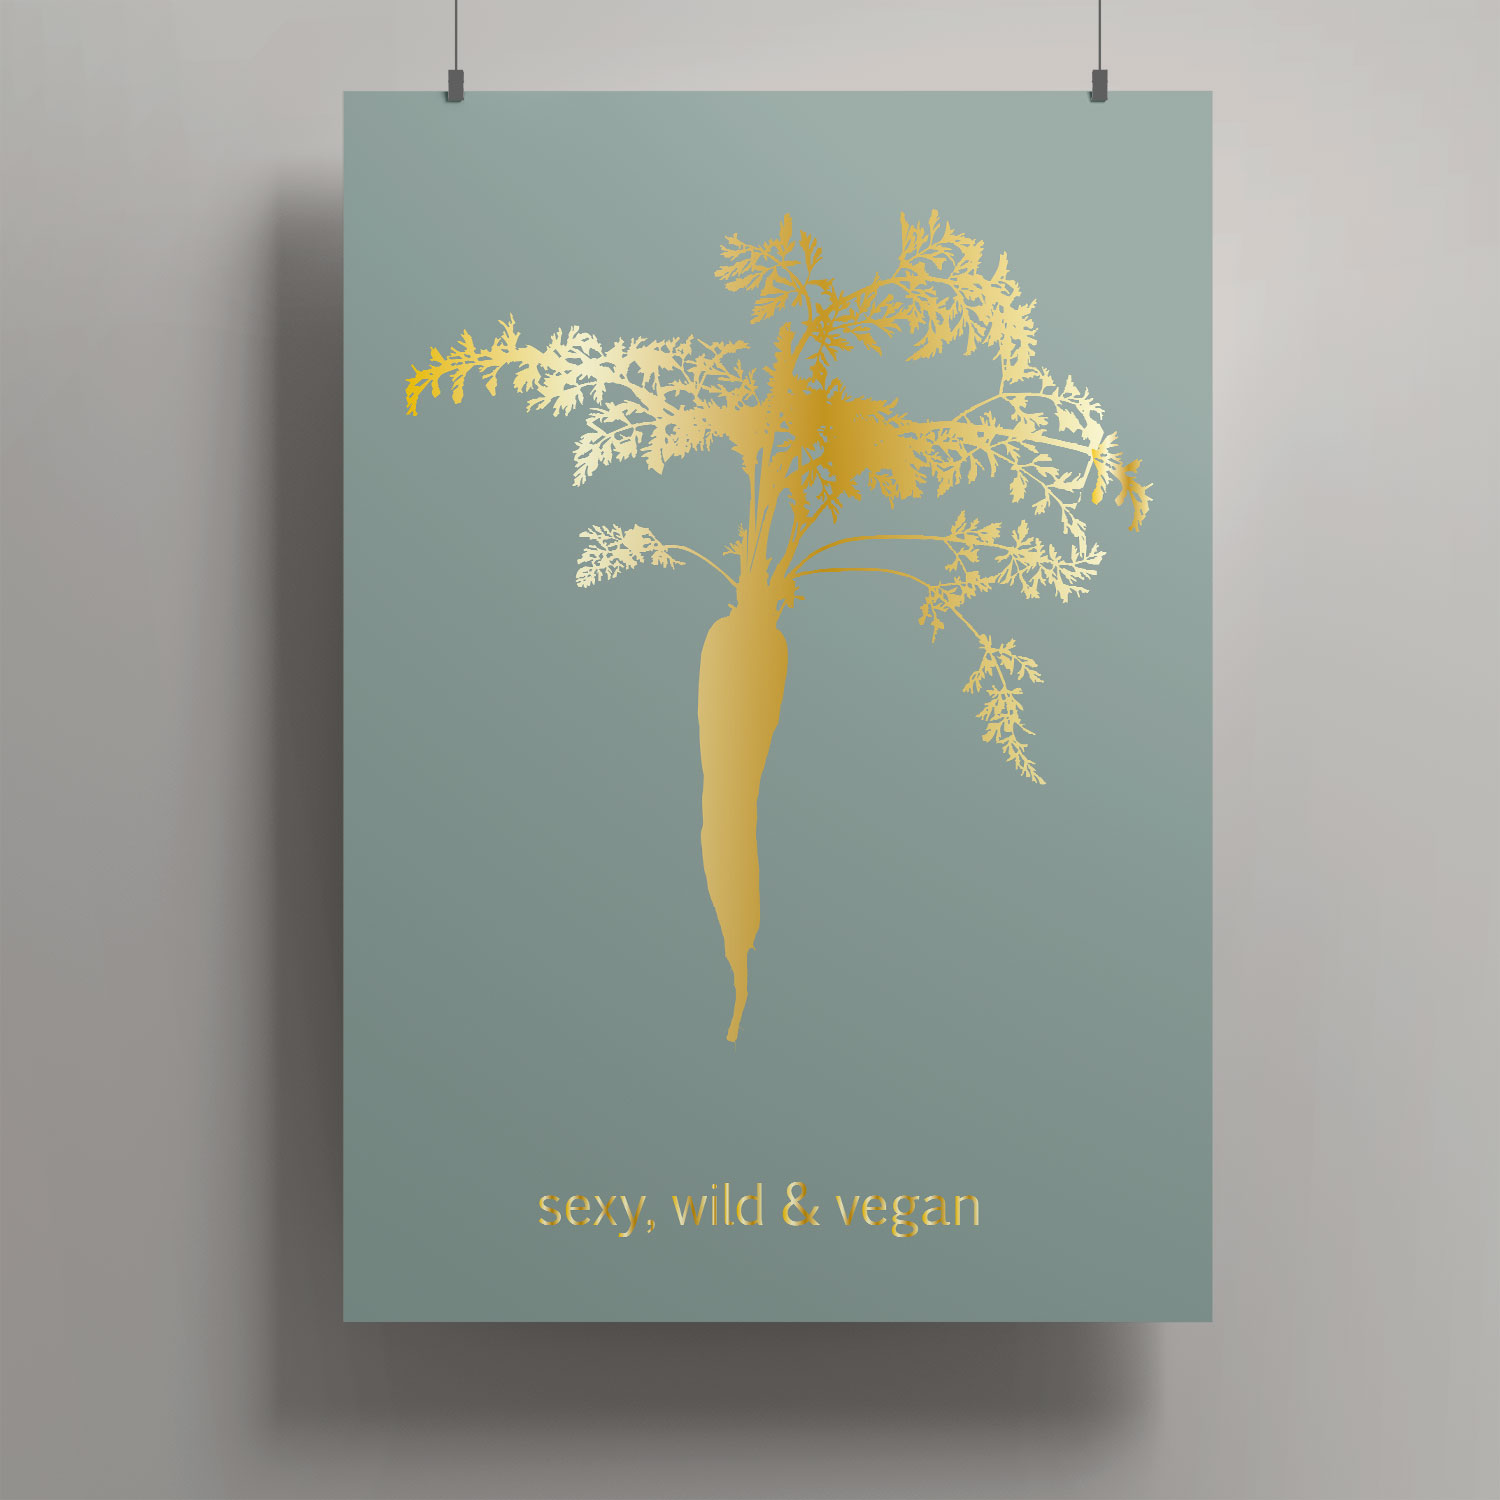 ArtPrint A4 - Tony Starck - sexy, wild & vegan